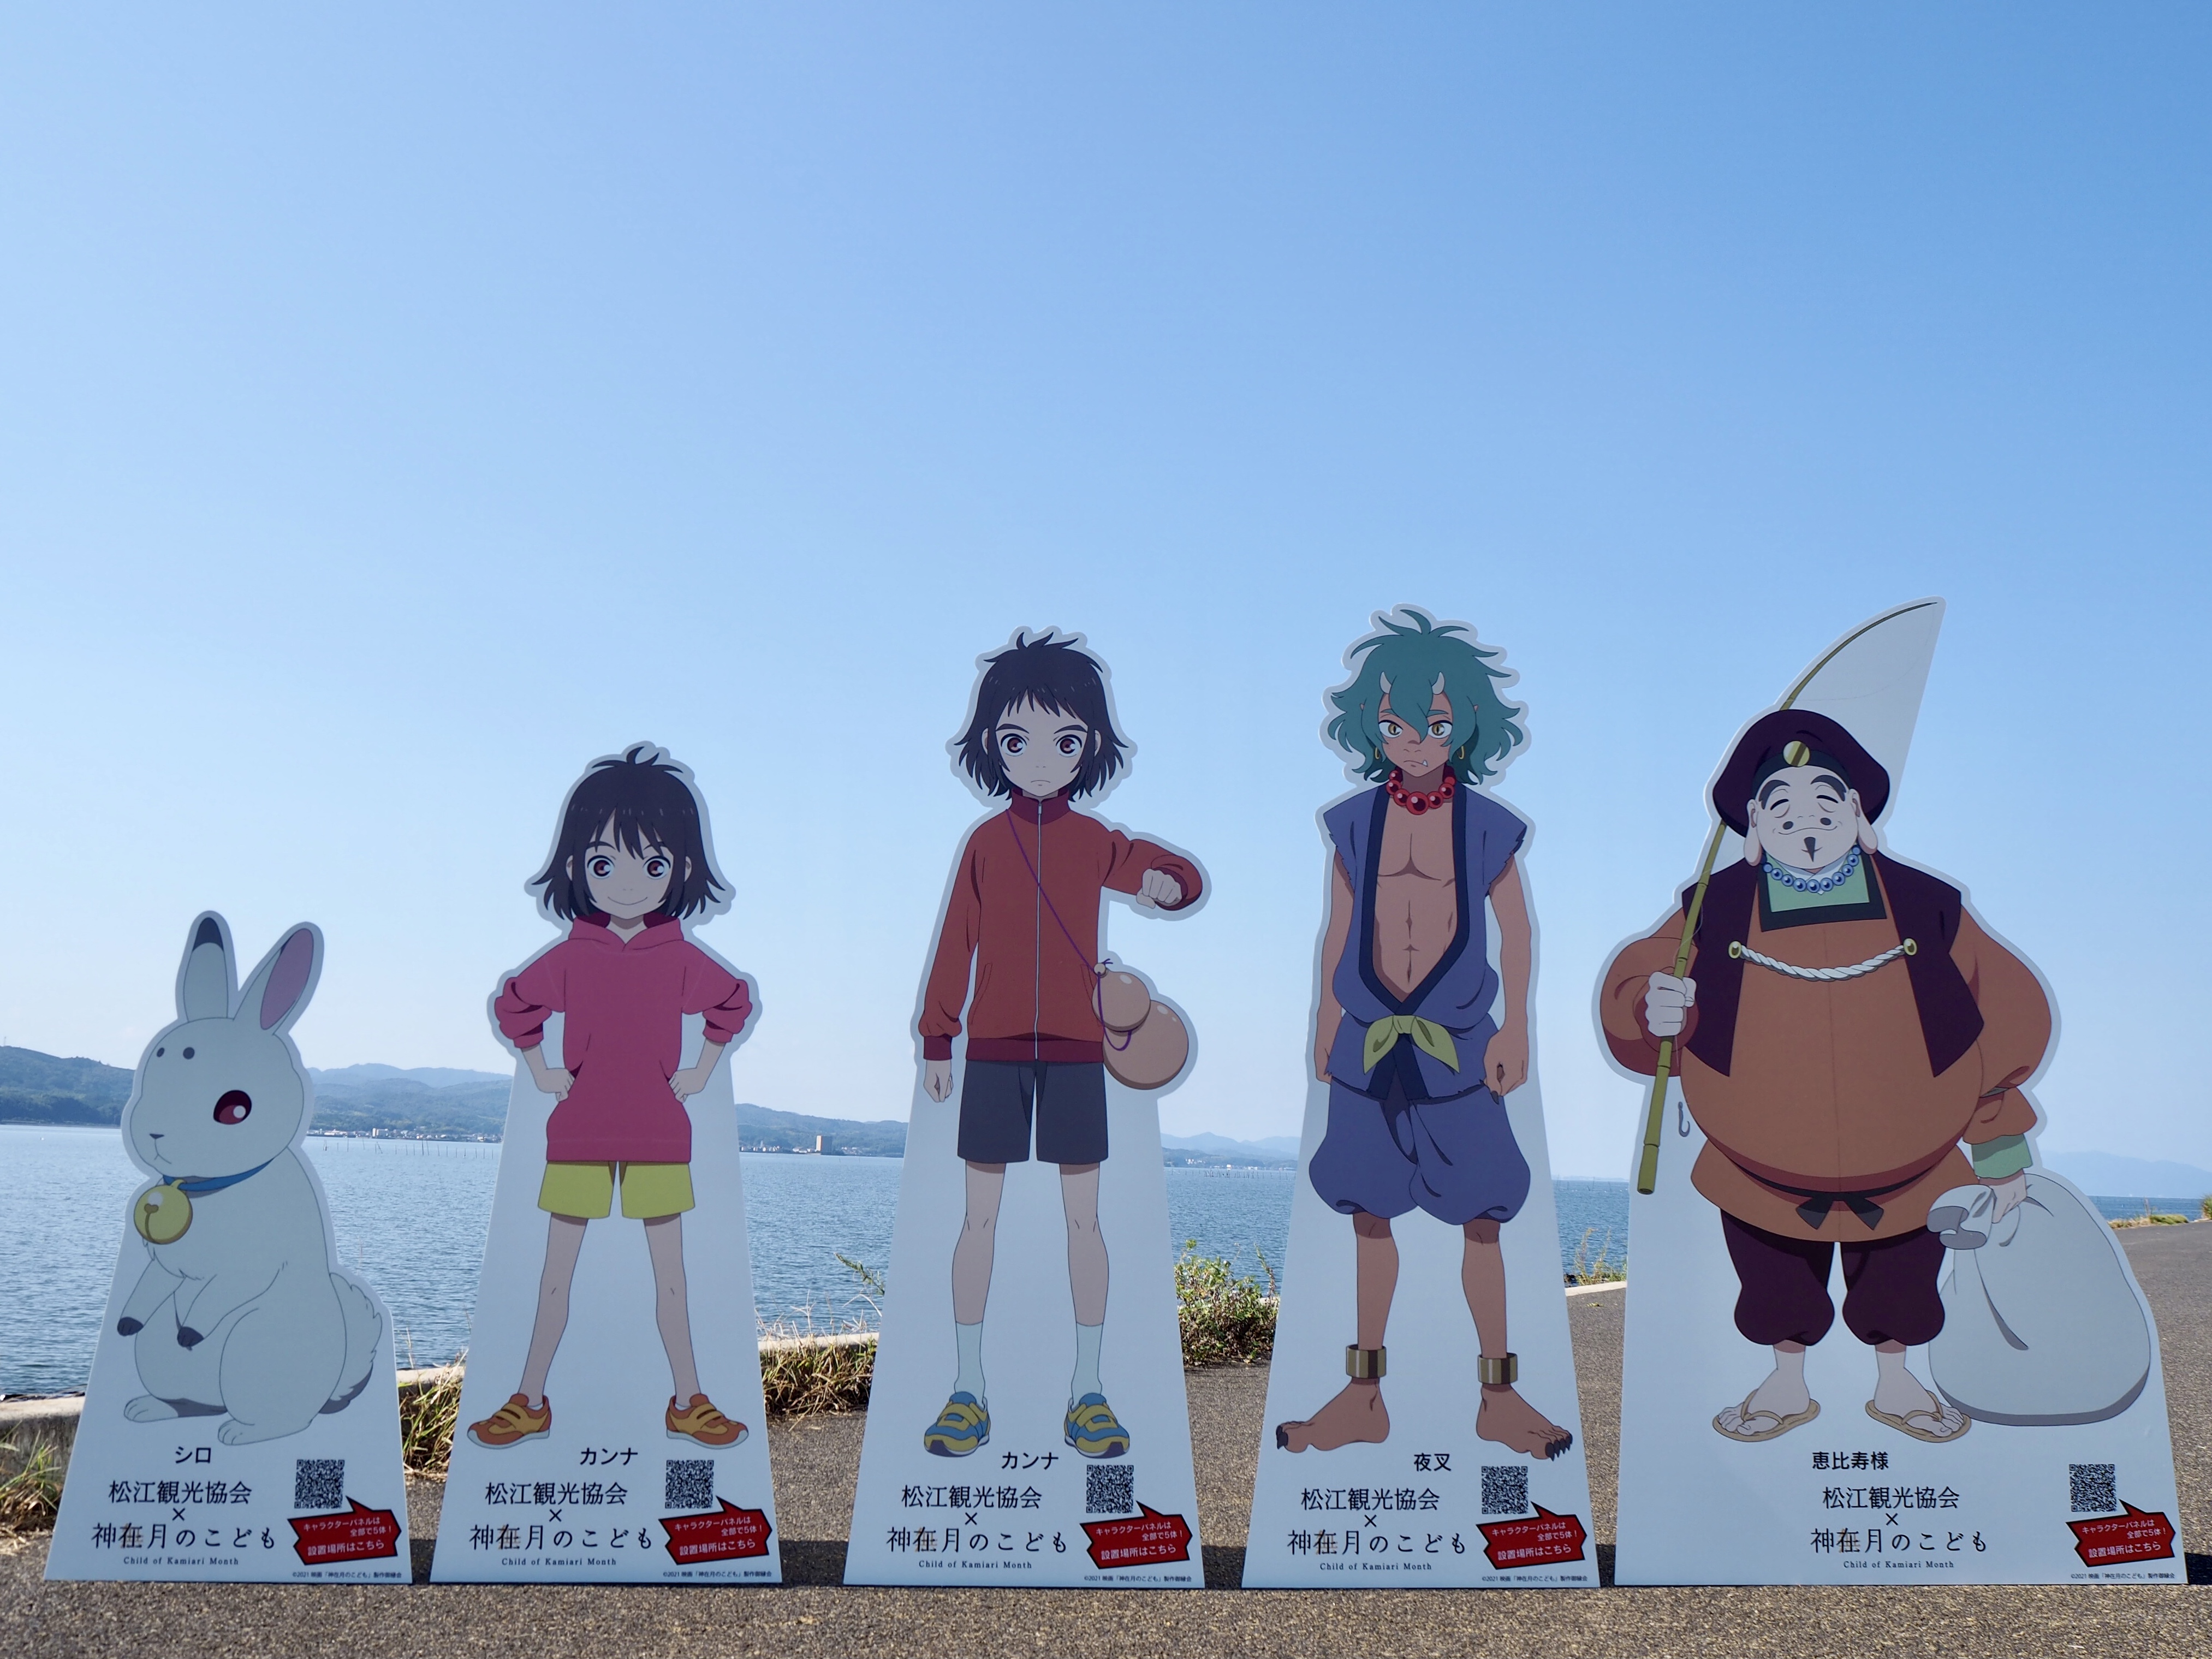 松江観光協会 劇場オリジナルアニメ 神在月のこども キャラクターパネルが完成 一般社団法人 松江観光協会のプレスリリース